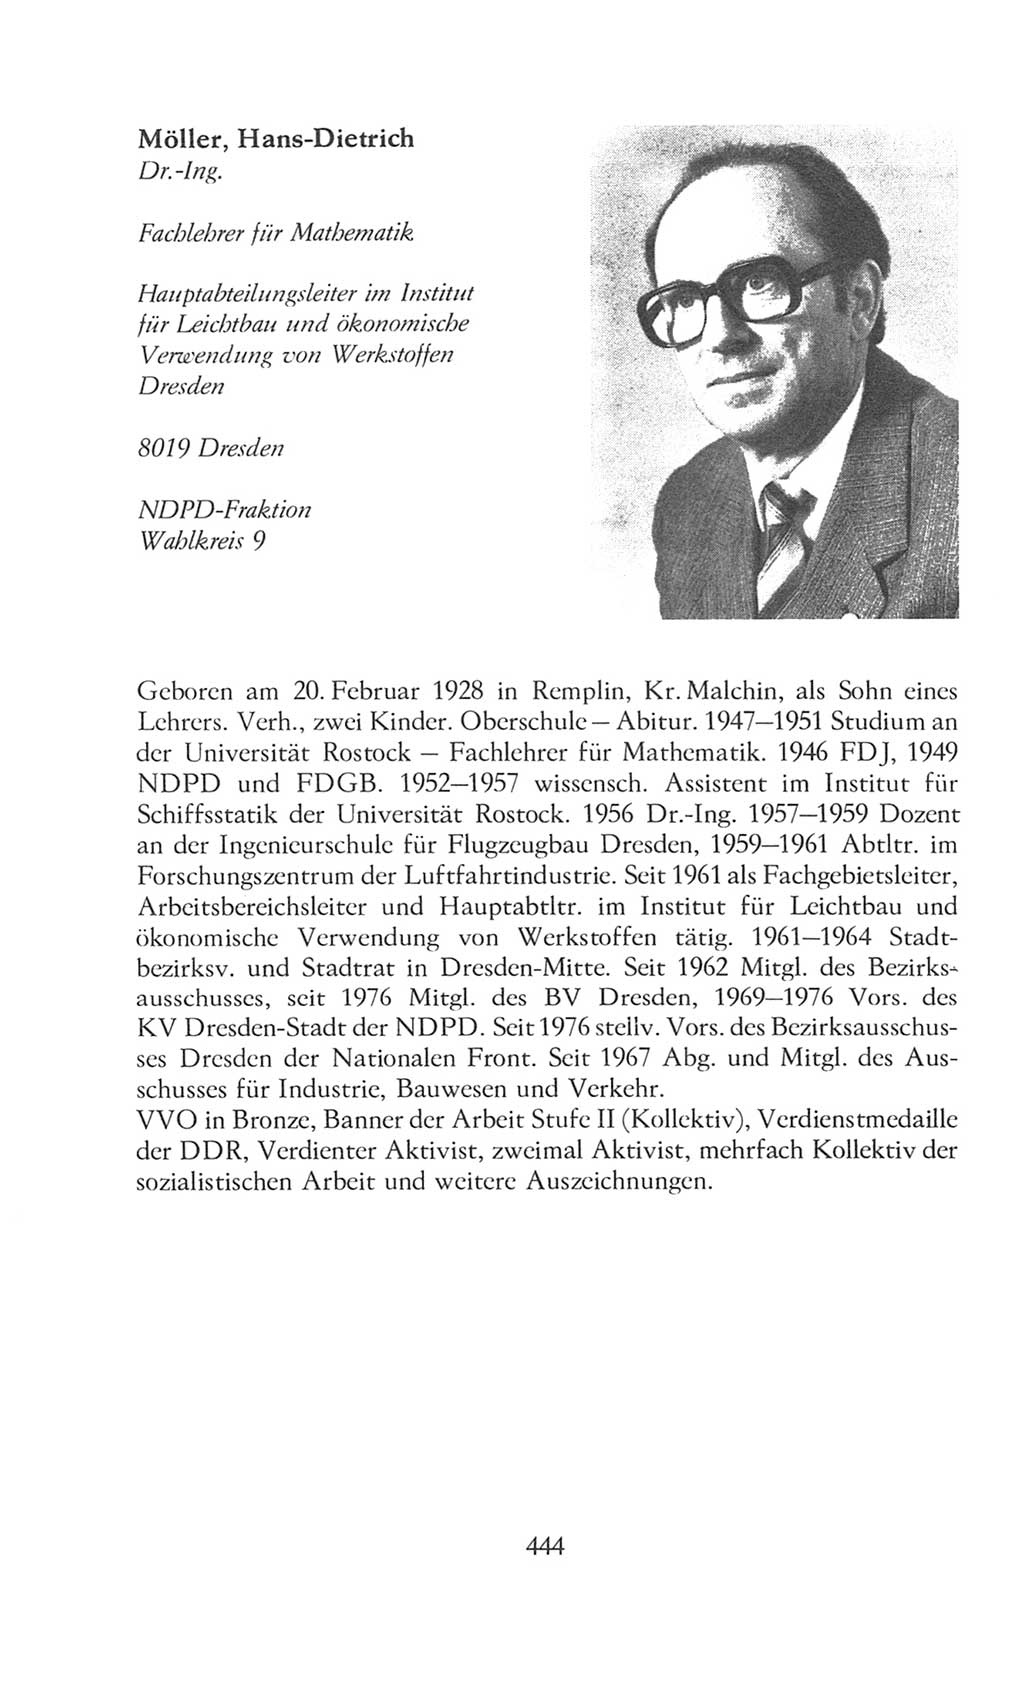 Volkskammer (VK) der Deutschen Demokratischen Republik (DDR), 8. Wahlperiode 1981-1986, Seite 444 (VK. DDR 8. WP. 1981-1986, S. 444)